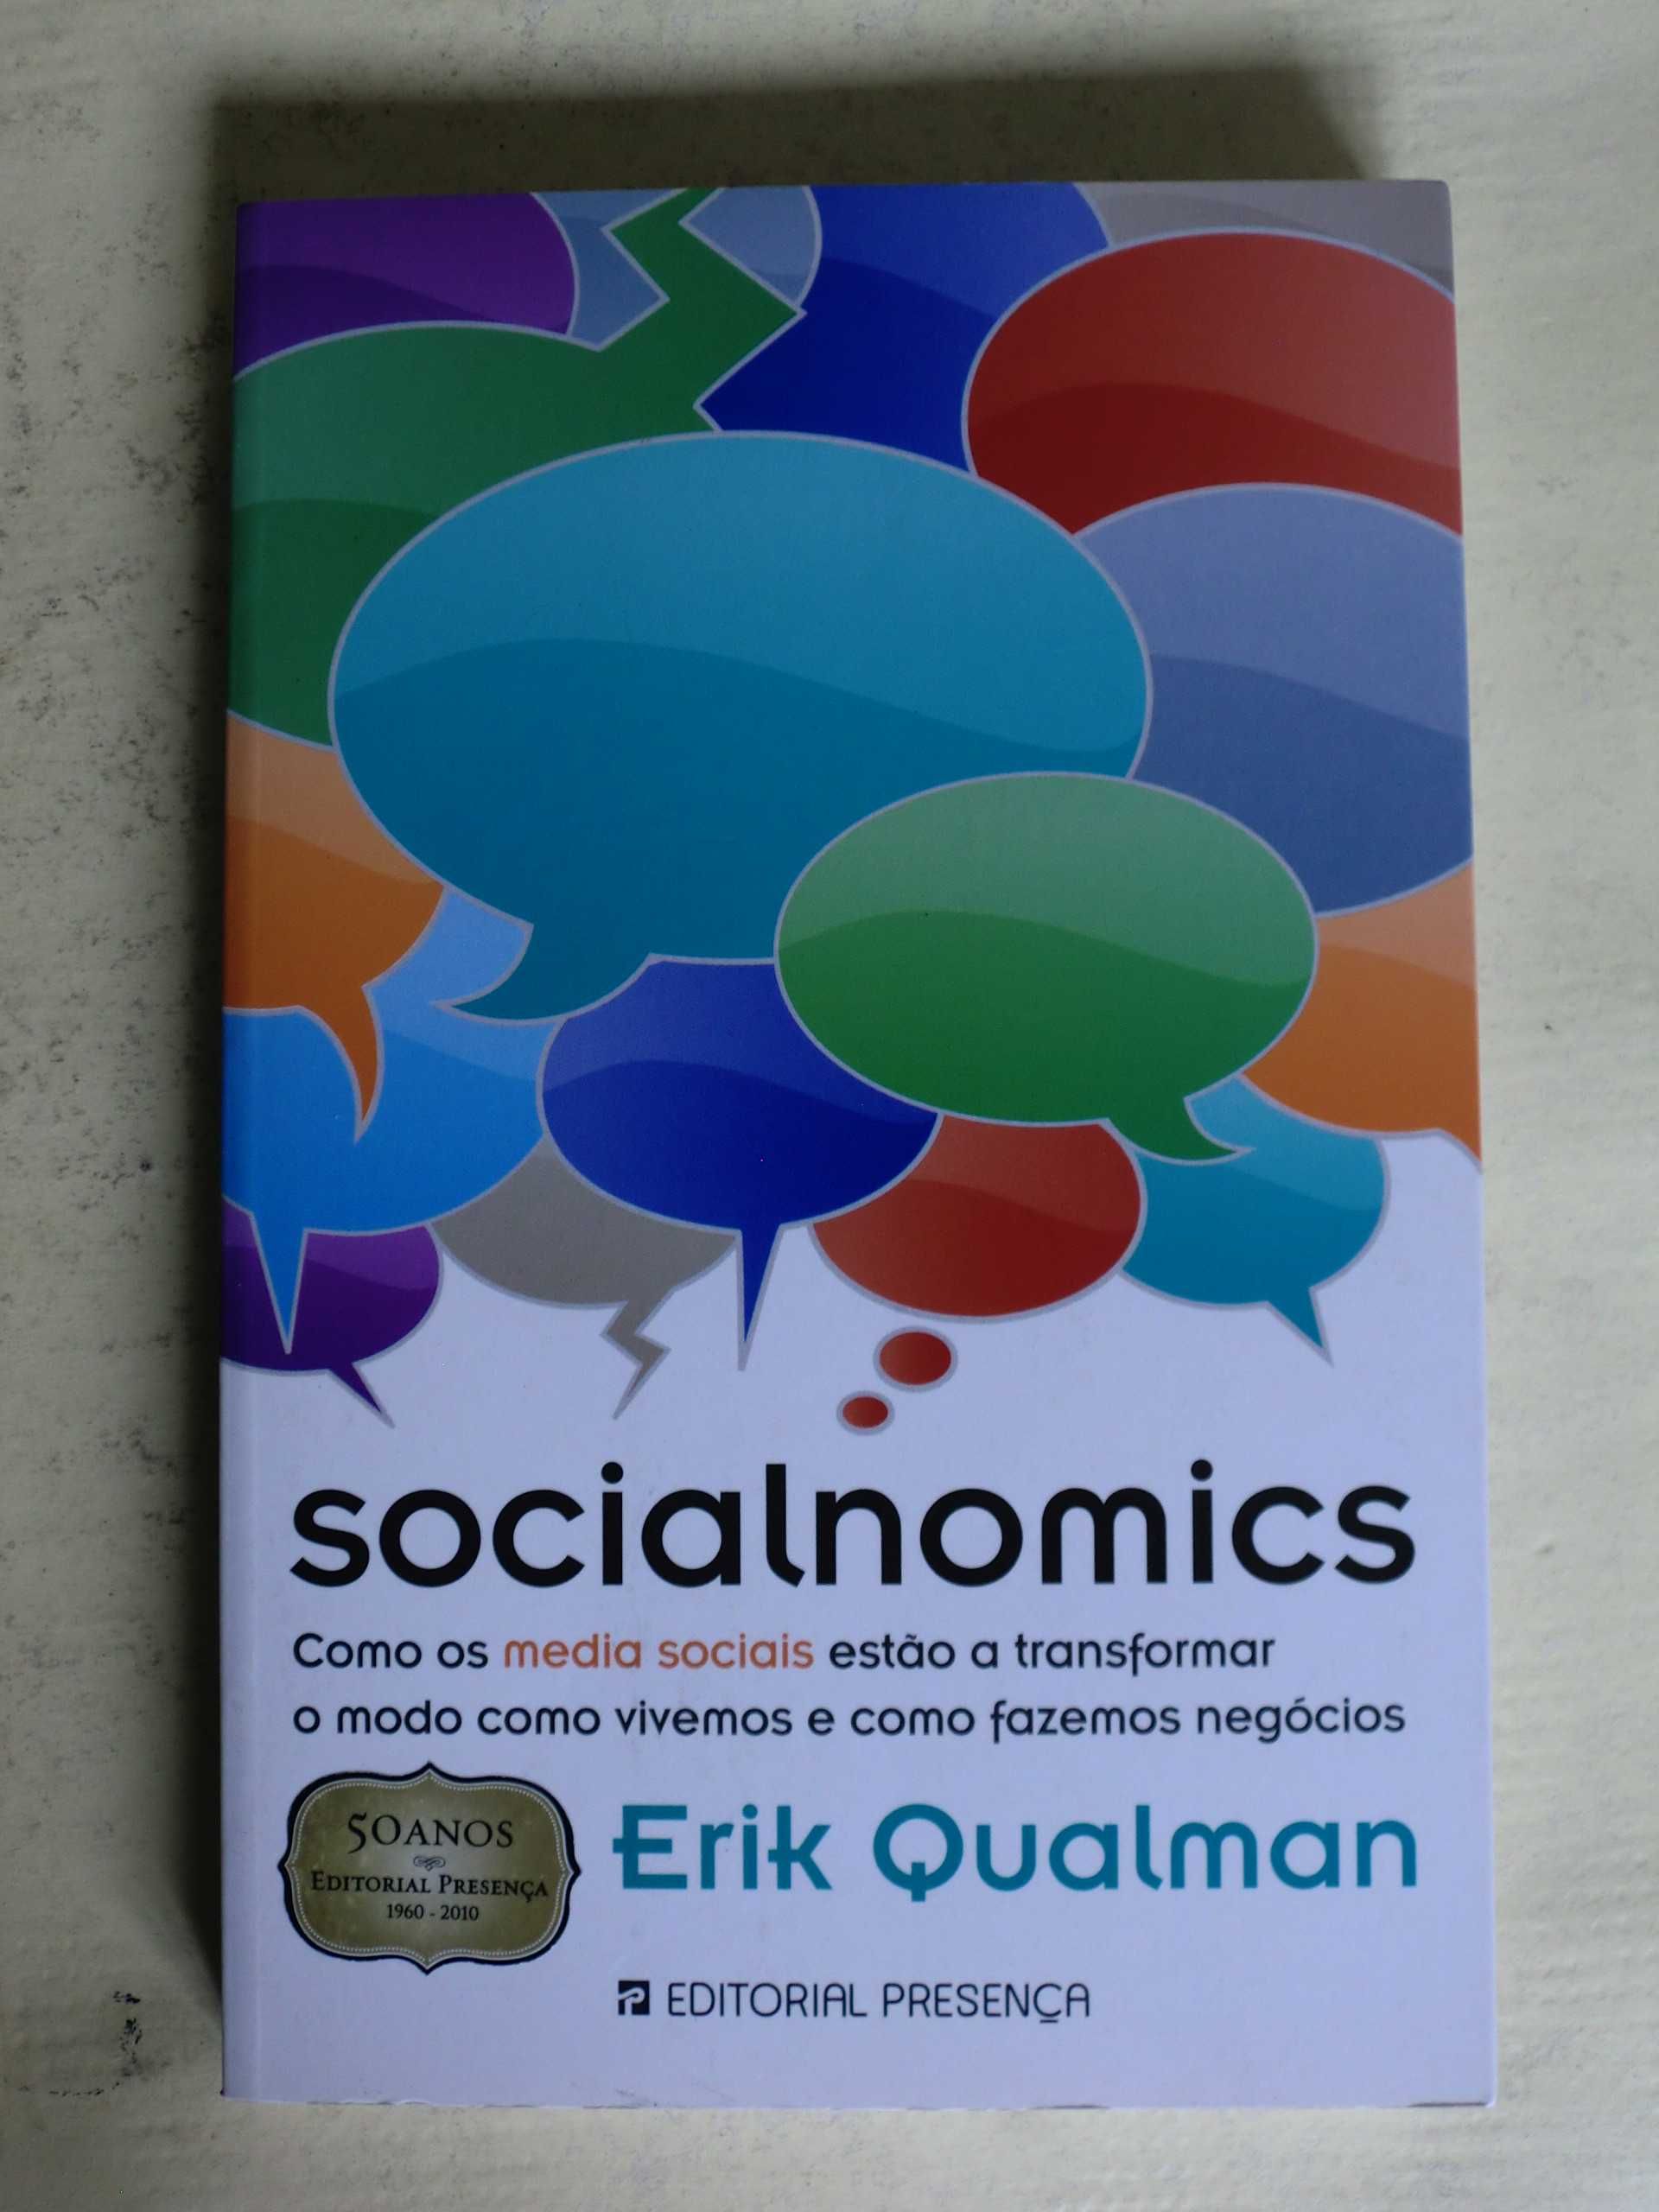 Socialnomics
de Erik Qualman